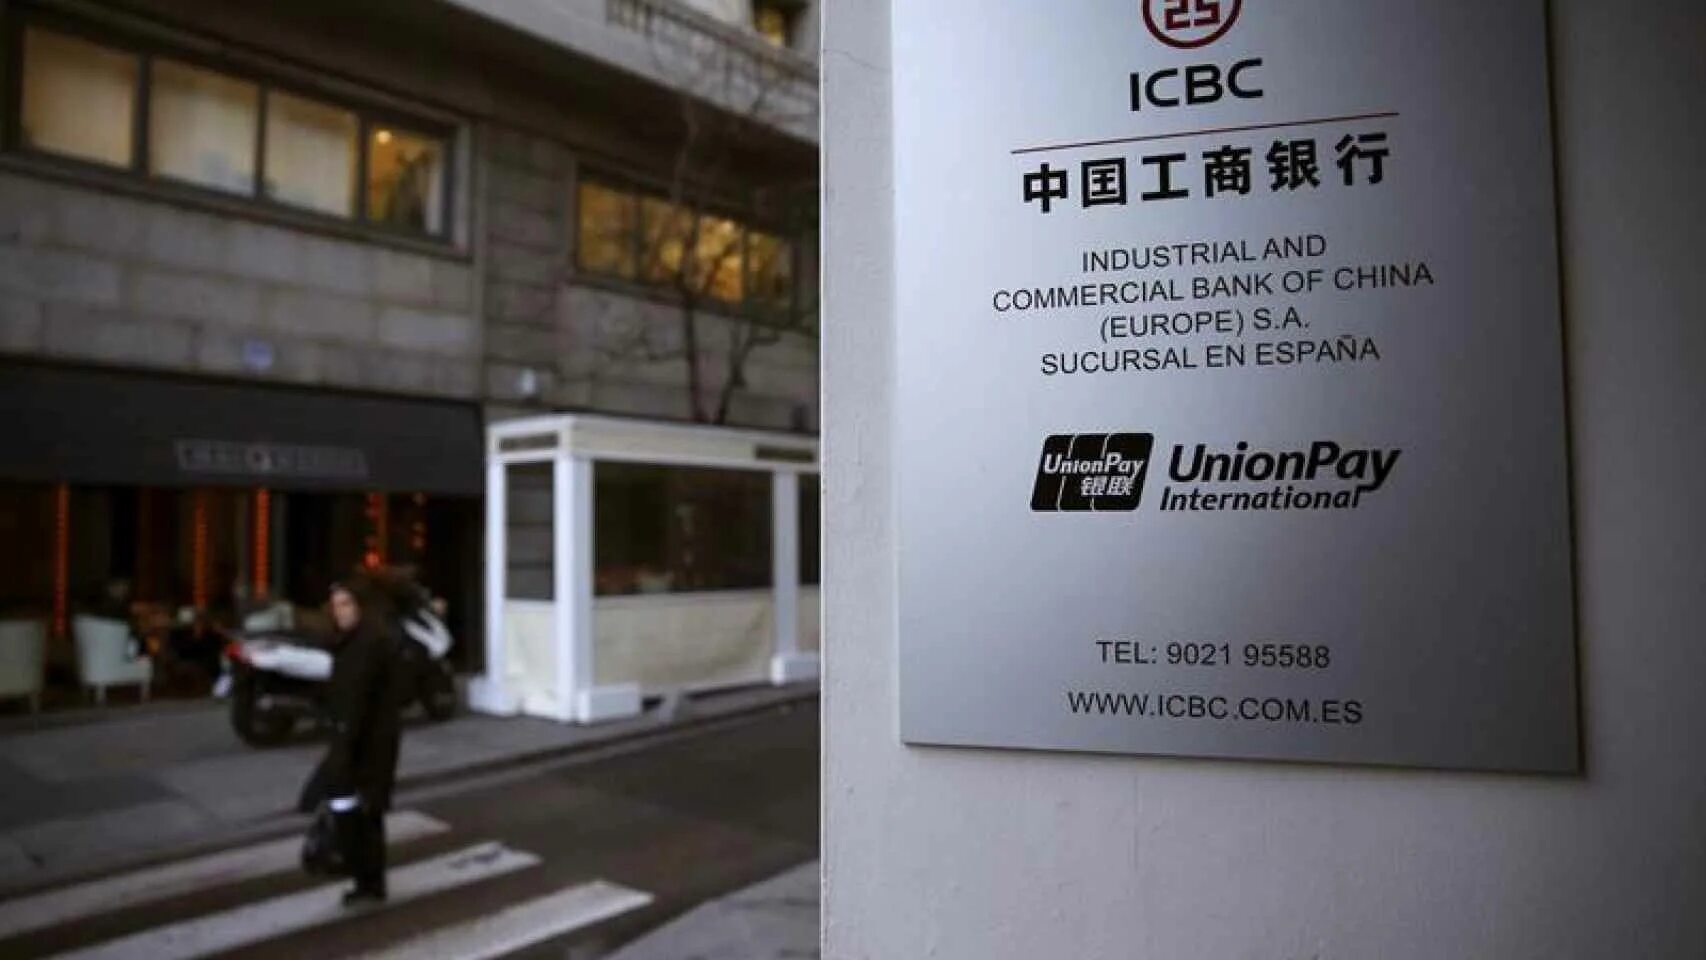 Банк Китая. Китайский банк ICBC. Commercial Bank of China (ICBC). Торгово-промышленный банк Китая. Bank of china russia